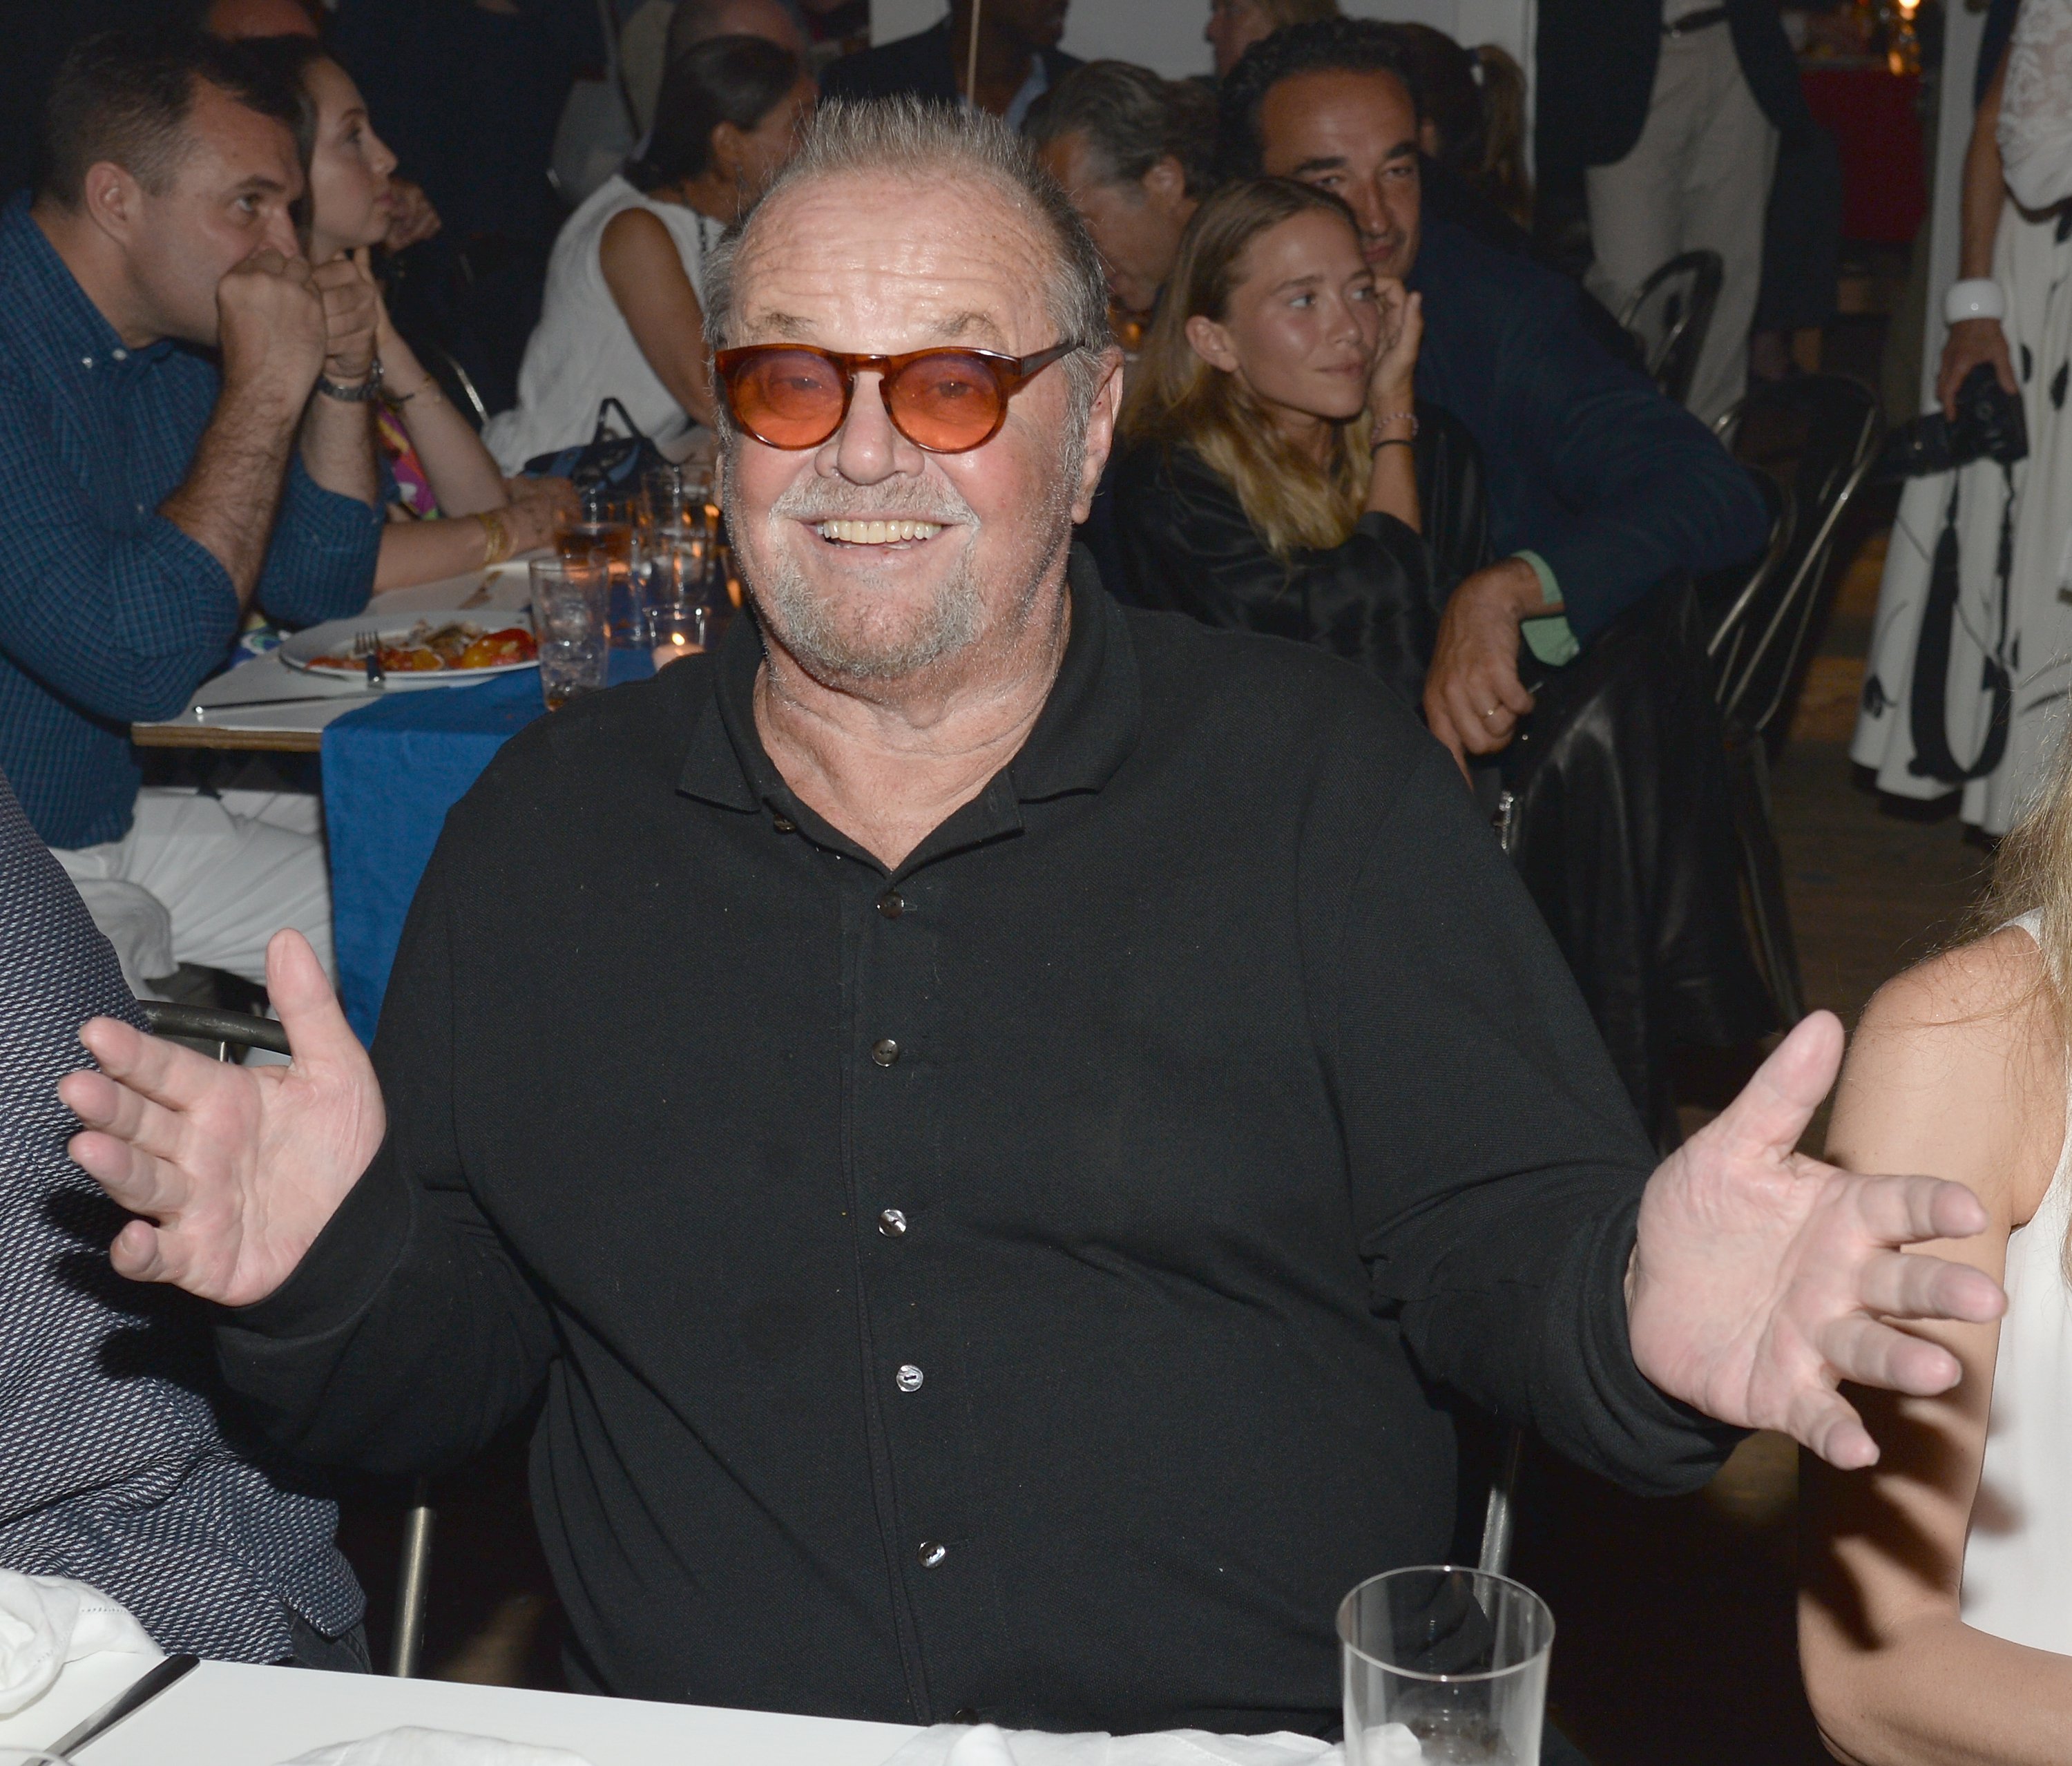 Jack Nicholson à Apollo dans les Hamptons 2015 aux Creeks le 15 août 2015 | Photo : Getty Images